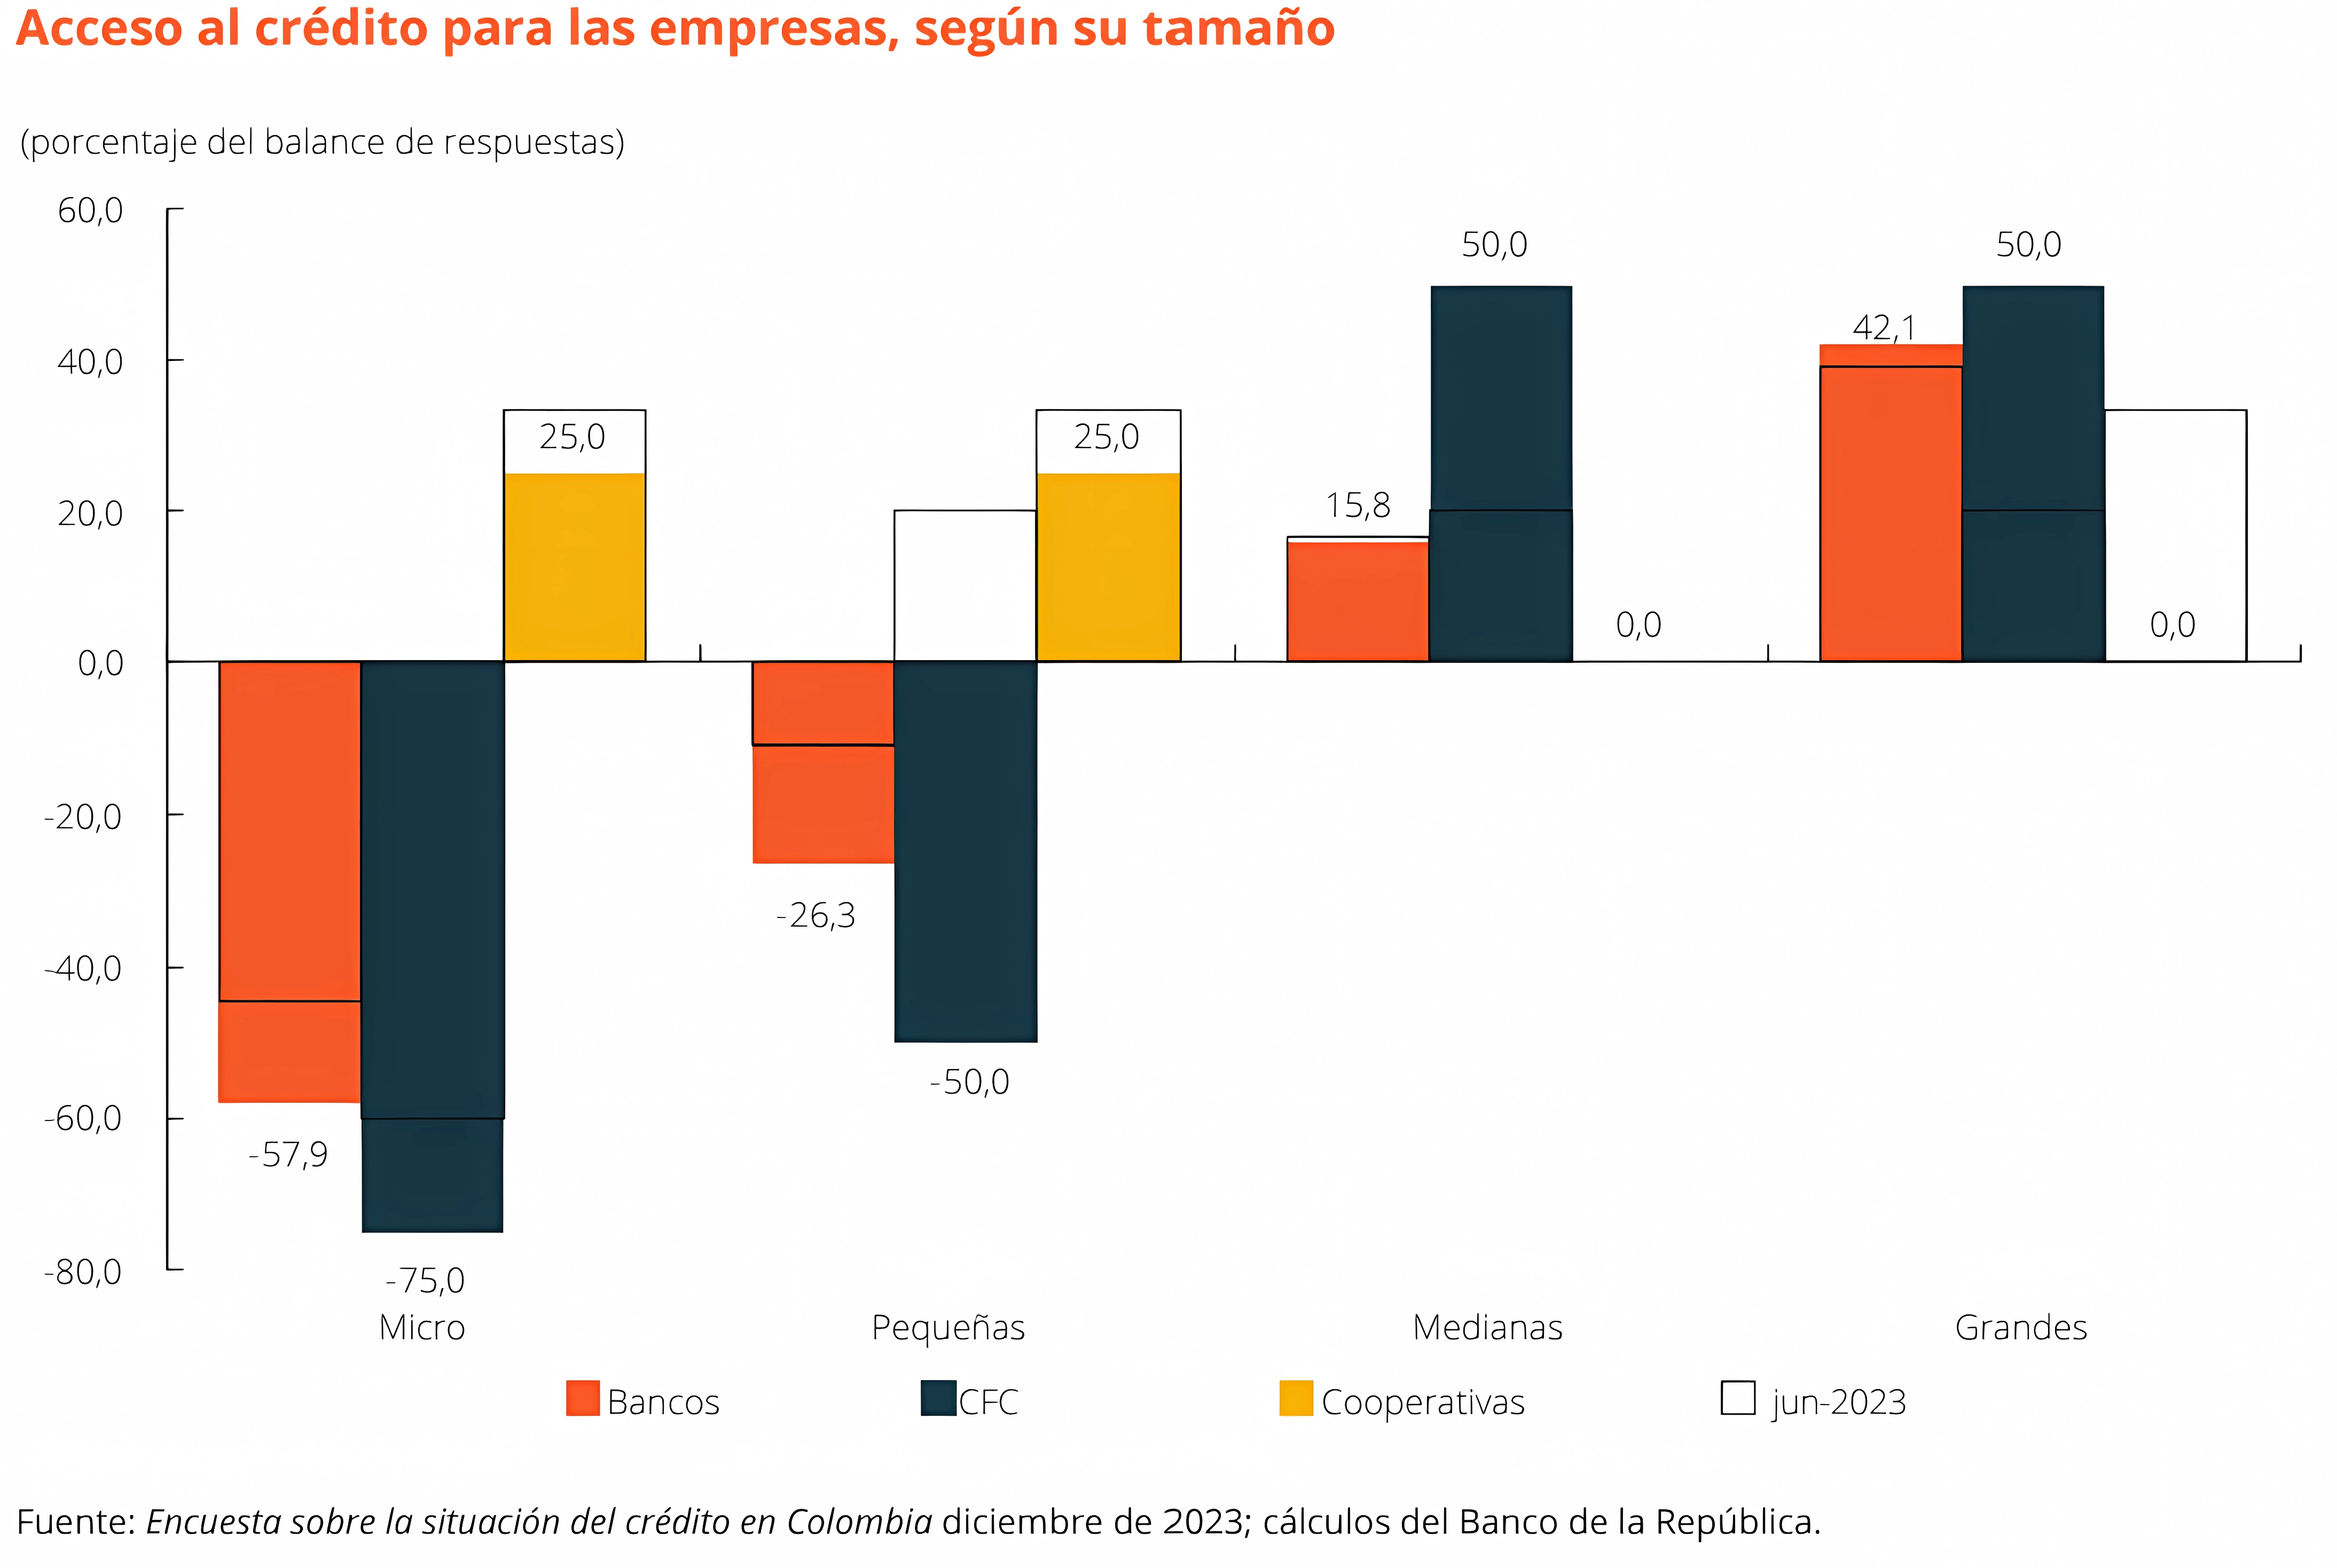 Acceso al crédito para empresas en Colombia según su tamaño (2023)